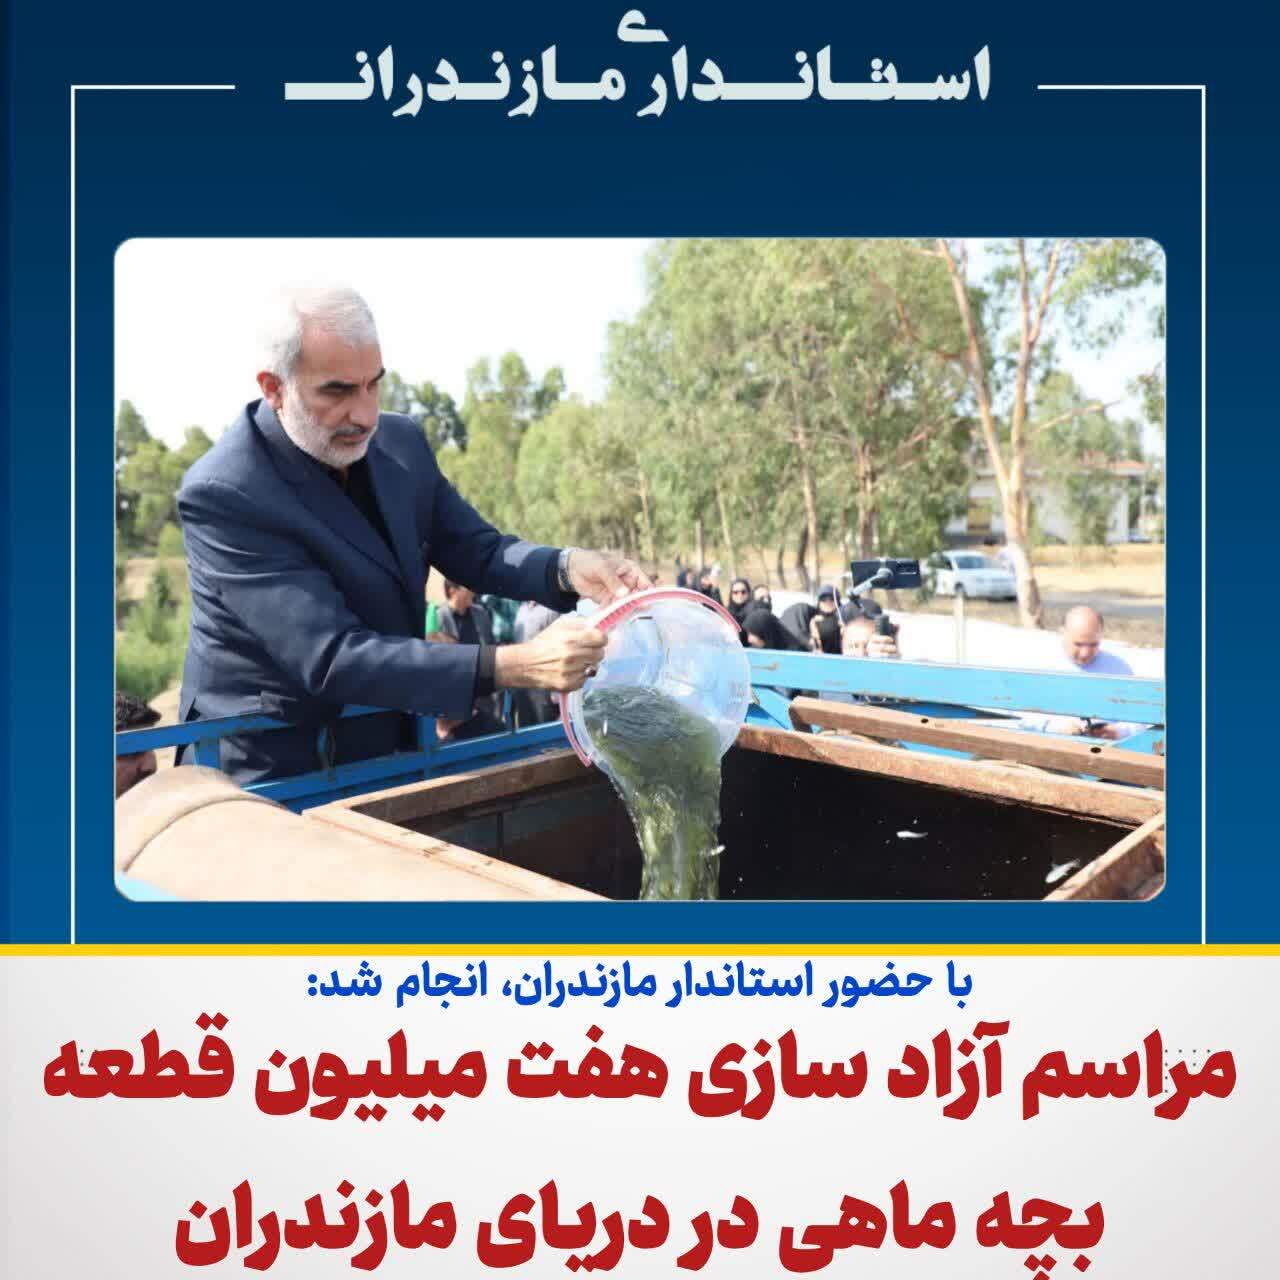 آزاد سازی هفت میلیون قطعه بچه ماهی به صورت طبیعی در دریای مازندران